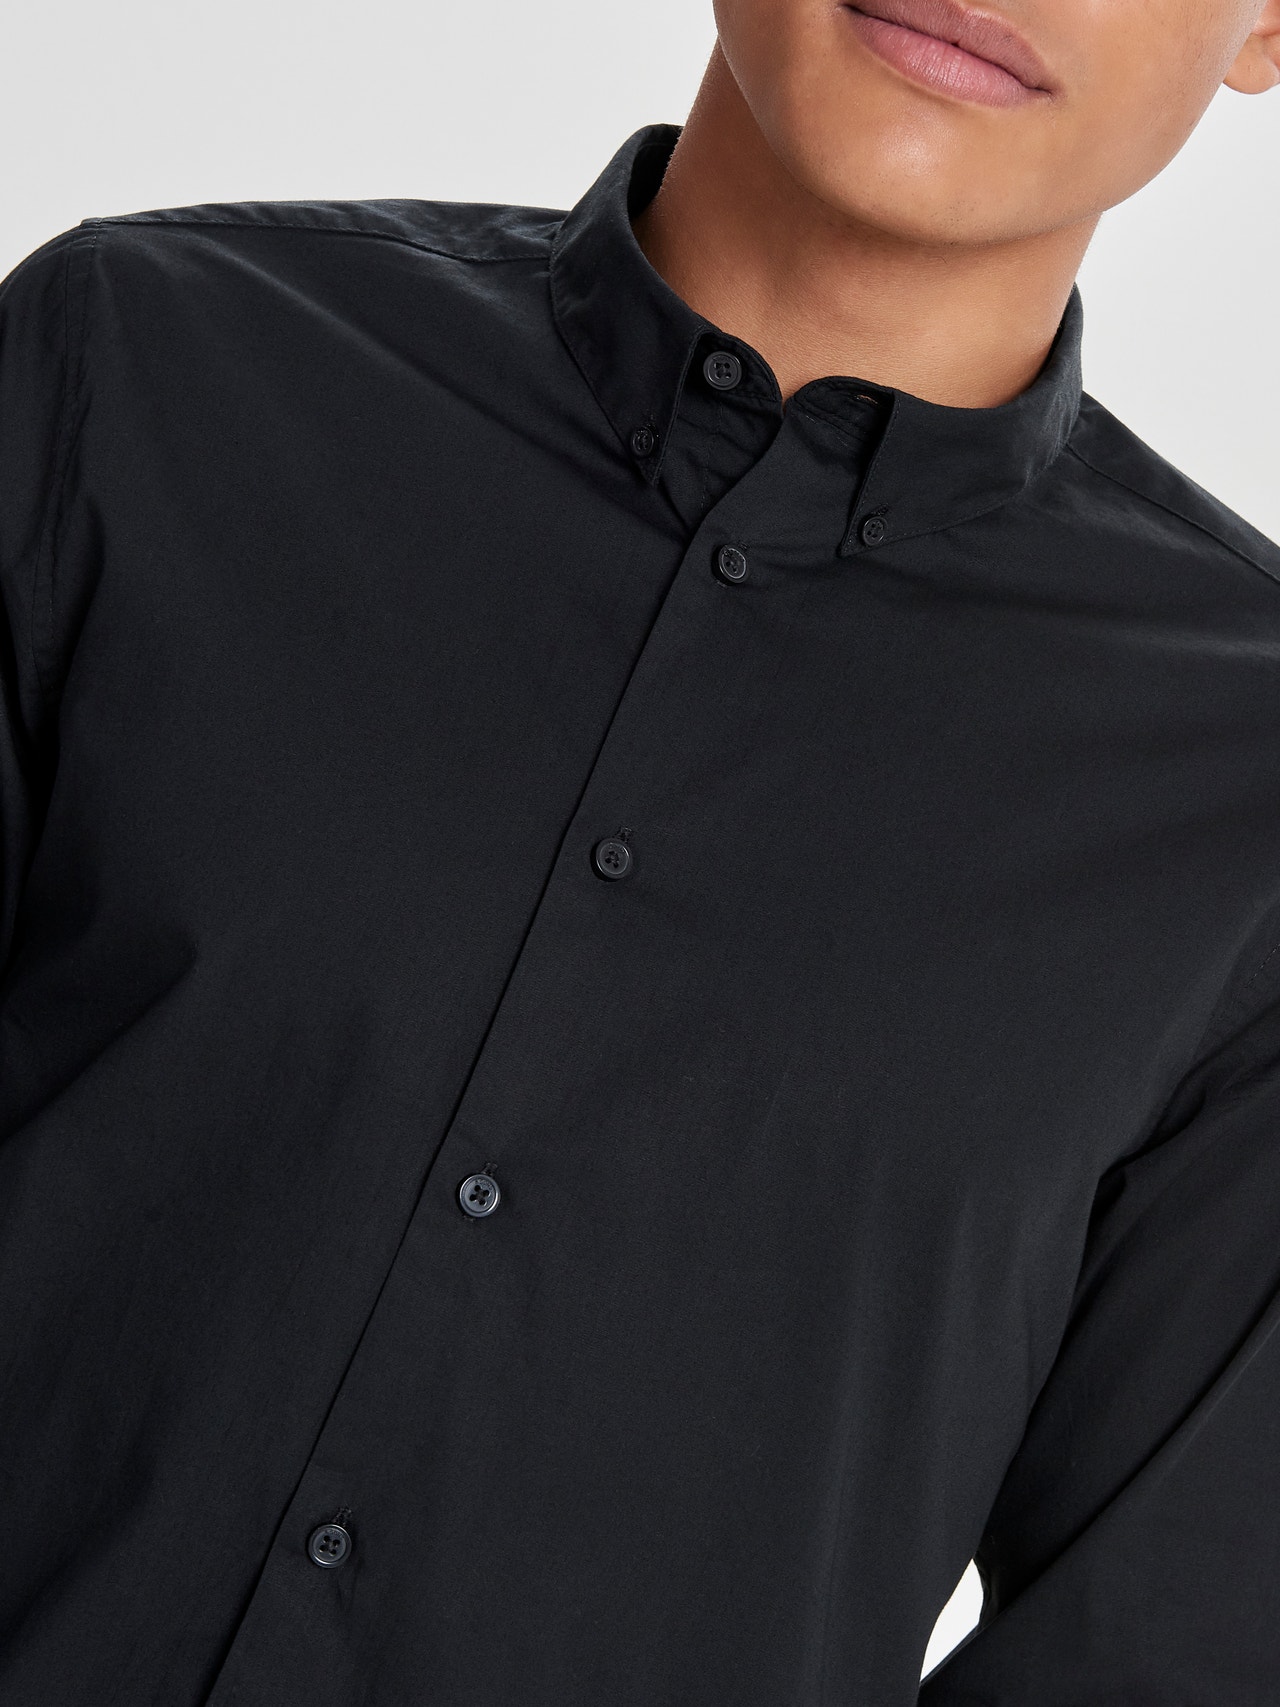 ONLY & SONS Camisas Corte slim Cuello de camisa -Black - 22010862